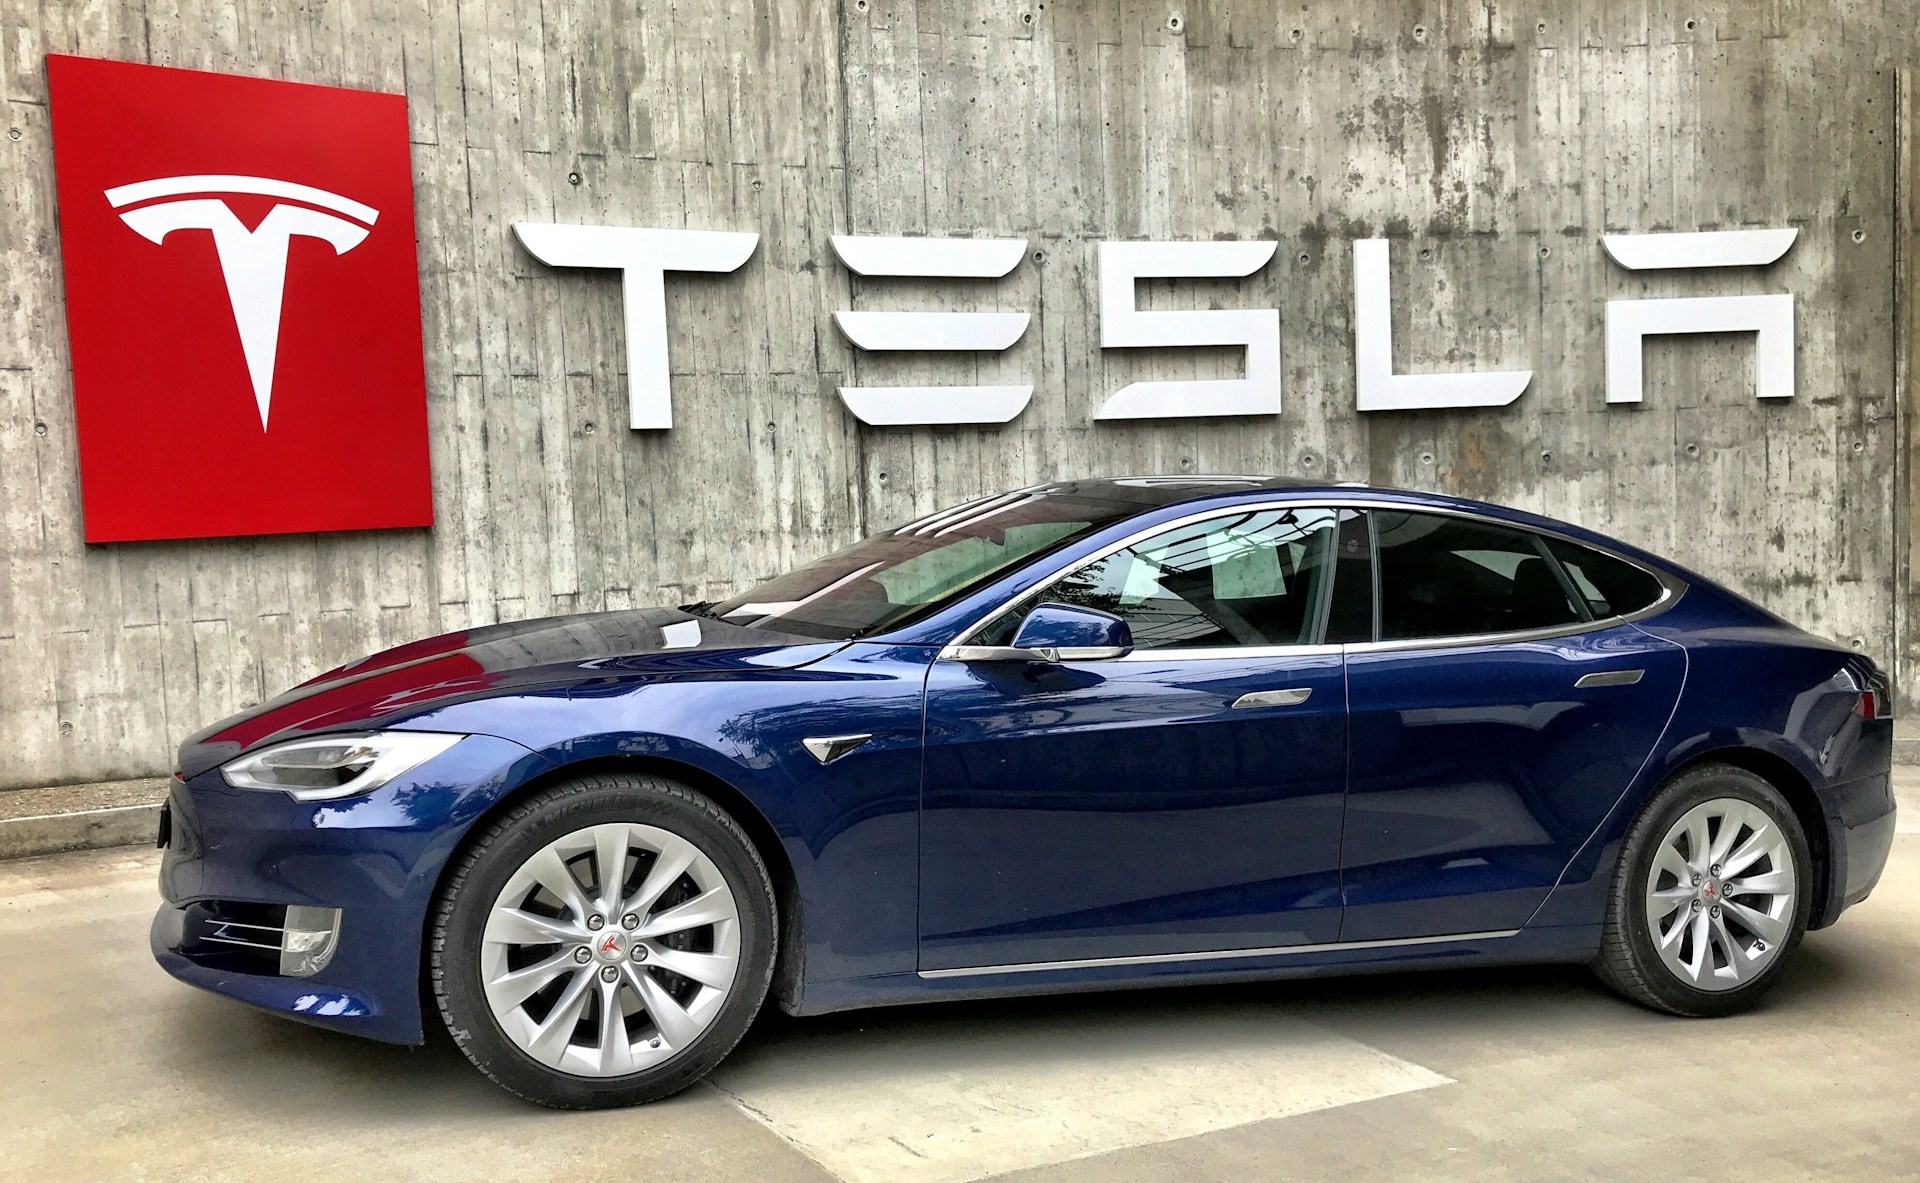 ¿Quieres un Tesla? Santander financia mil mdp para comprar autos eléctricos en México